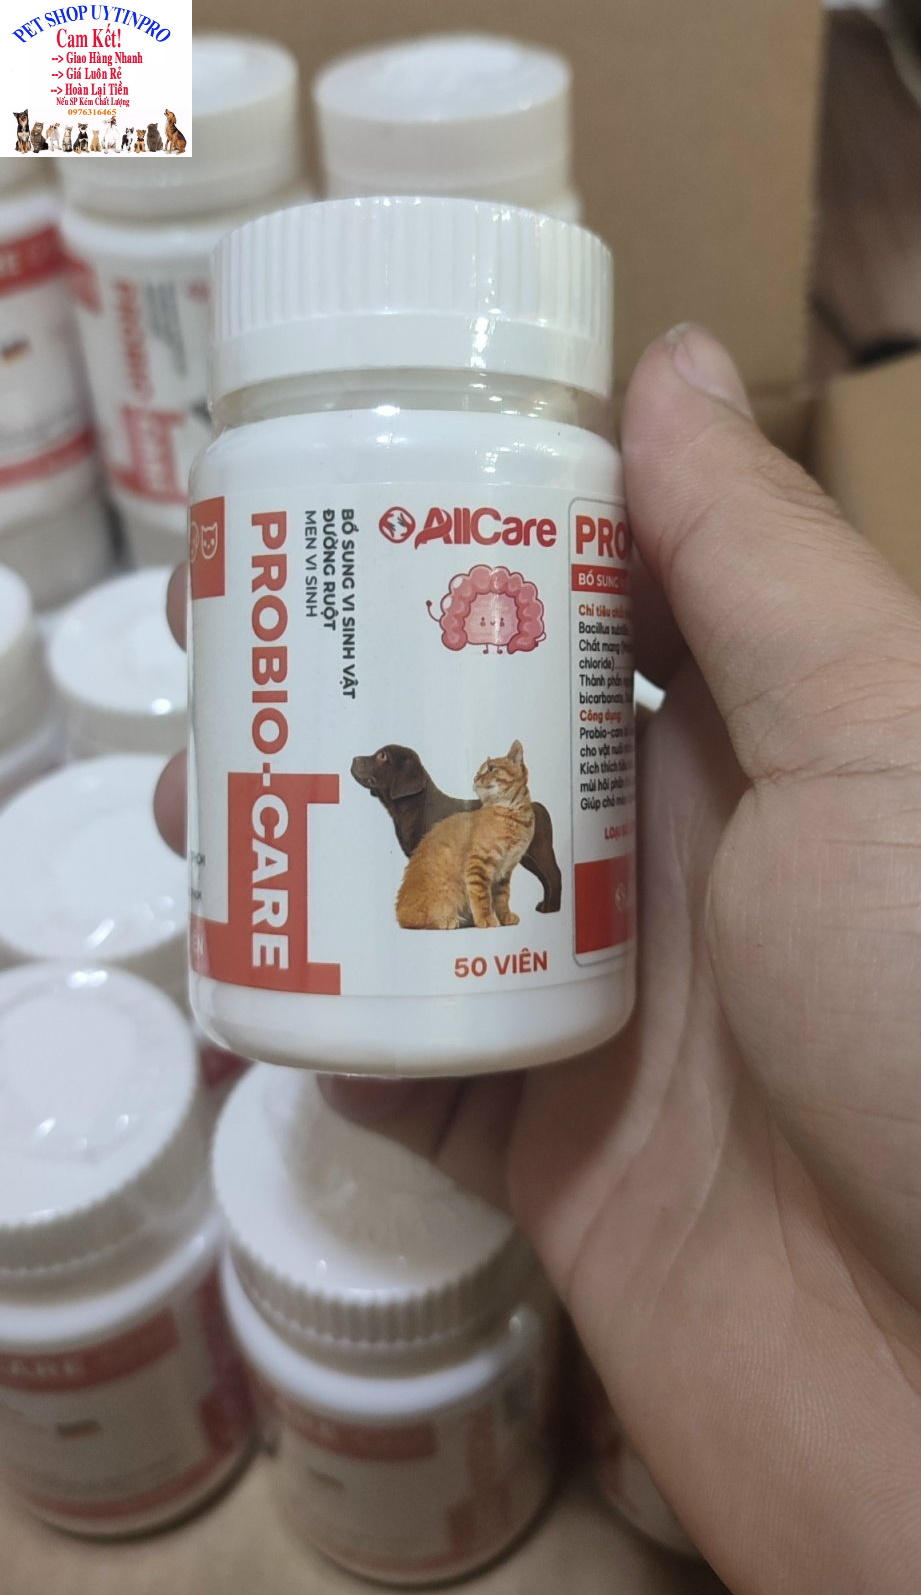 1 Viên bổ sung men vi sinh vật đường ruột cho Chó Mèo Probio-Care Giúp cải thiện hệ tiêu hóa thú cưng Nliệu NK từ Đức